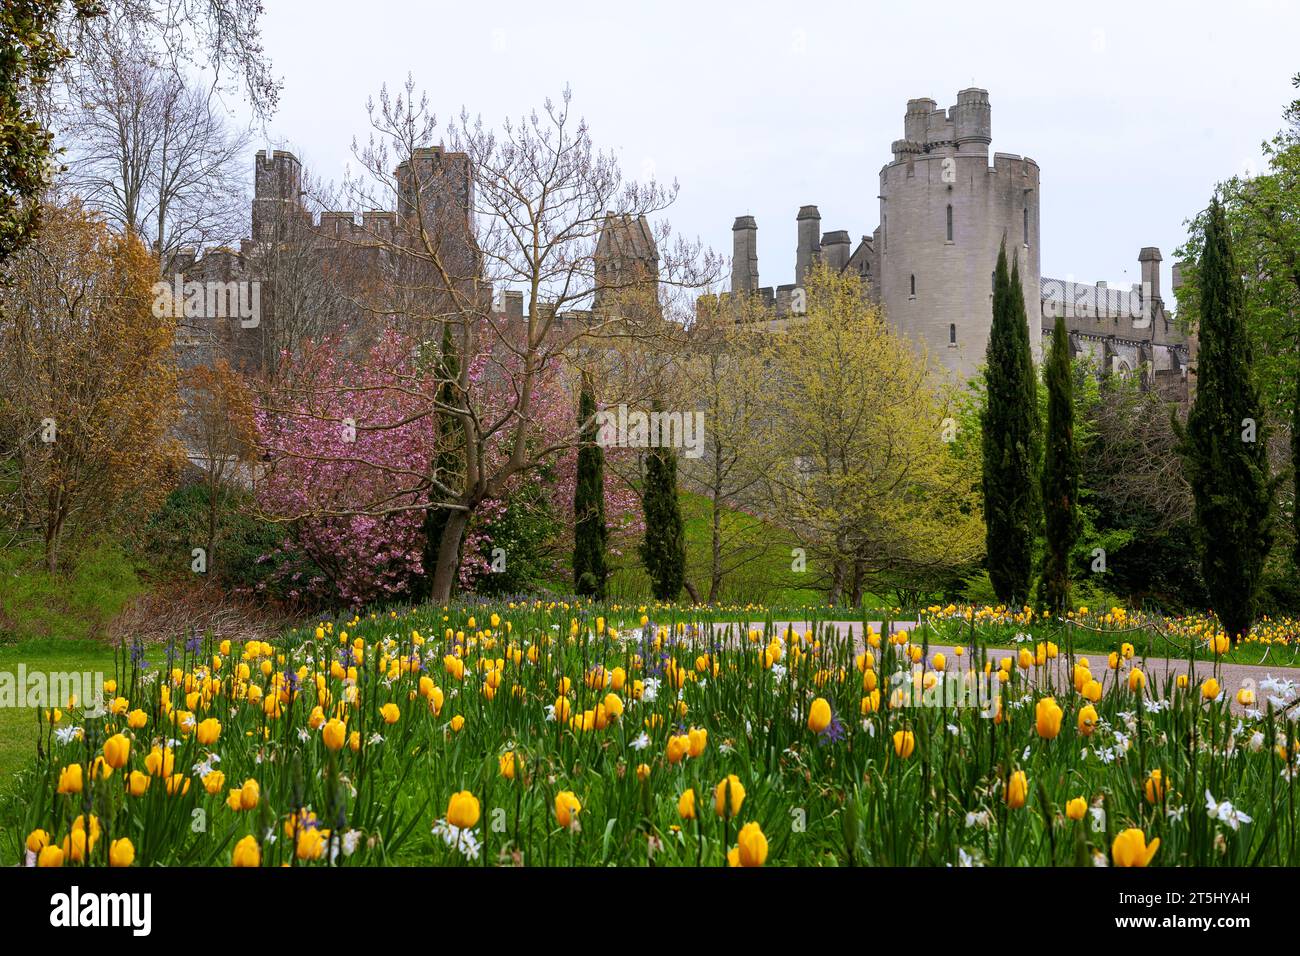 Tours sur l'élévation sud-ouest du château d'Arundel, avec fleurs printanières et tulipes au premier plan : Arundel, West Sussex, Royaume-Uni Banque D'Images